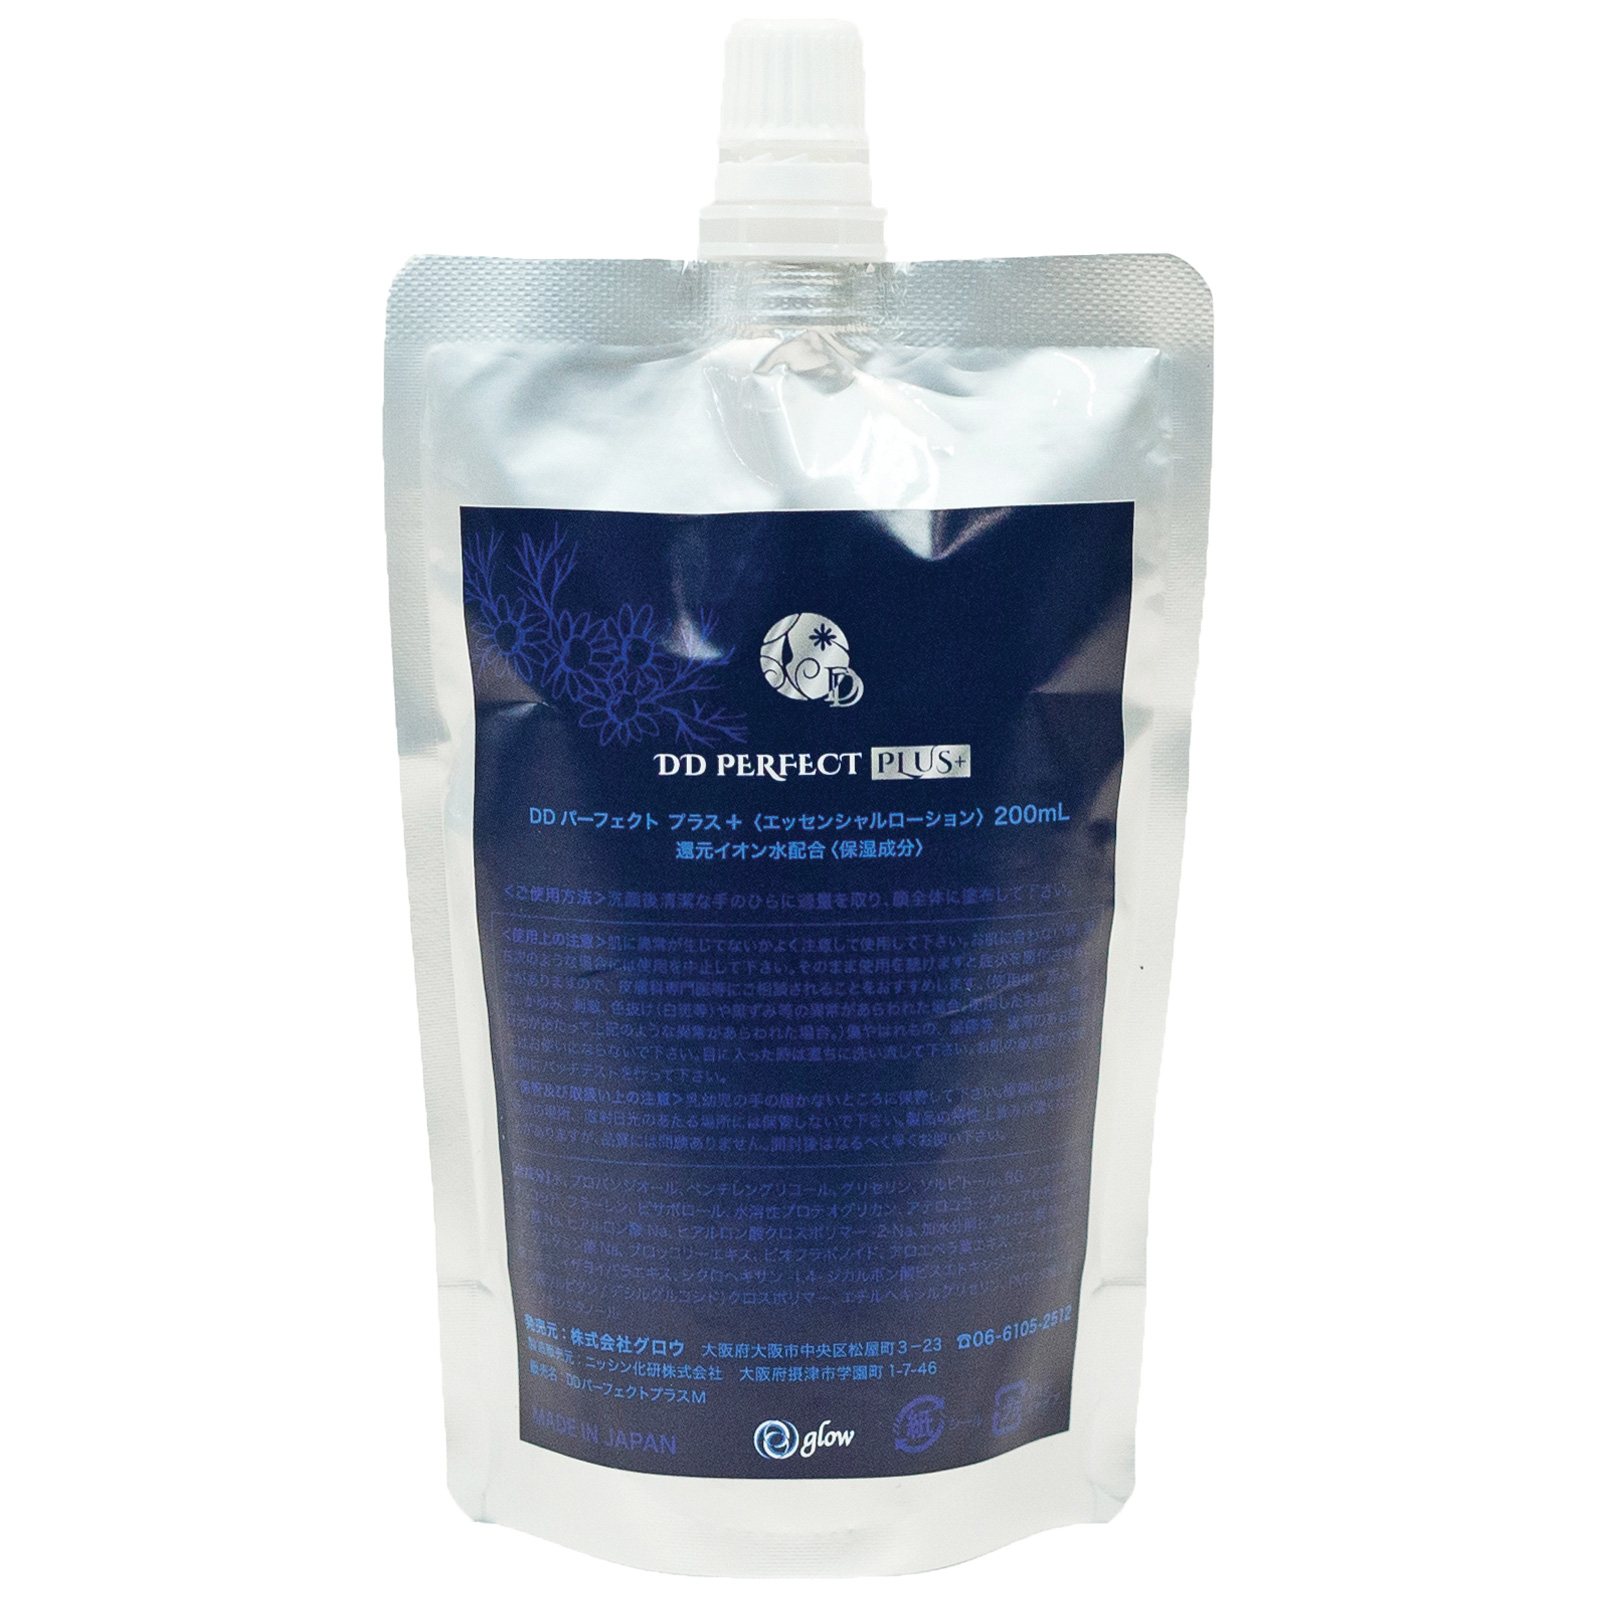 DD Perfect Plus Total Care Water. Увлажняющий лосьон для лица ДиДи Перфект Плюс на основе ионизированной воды G11, 200 мл